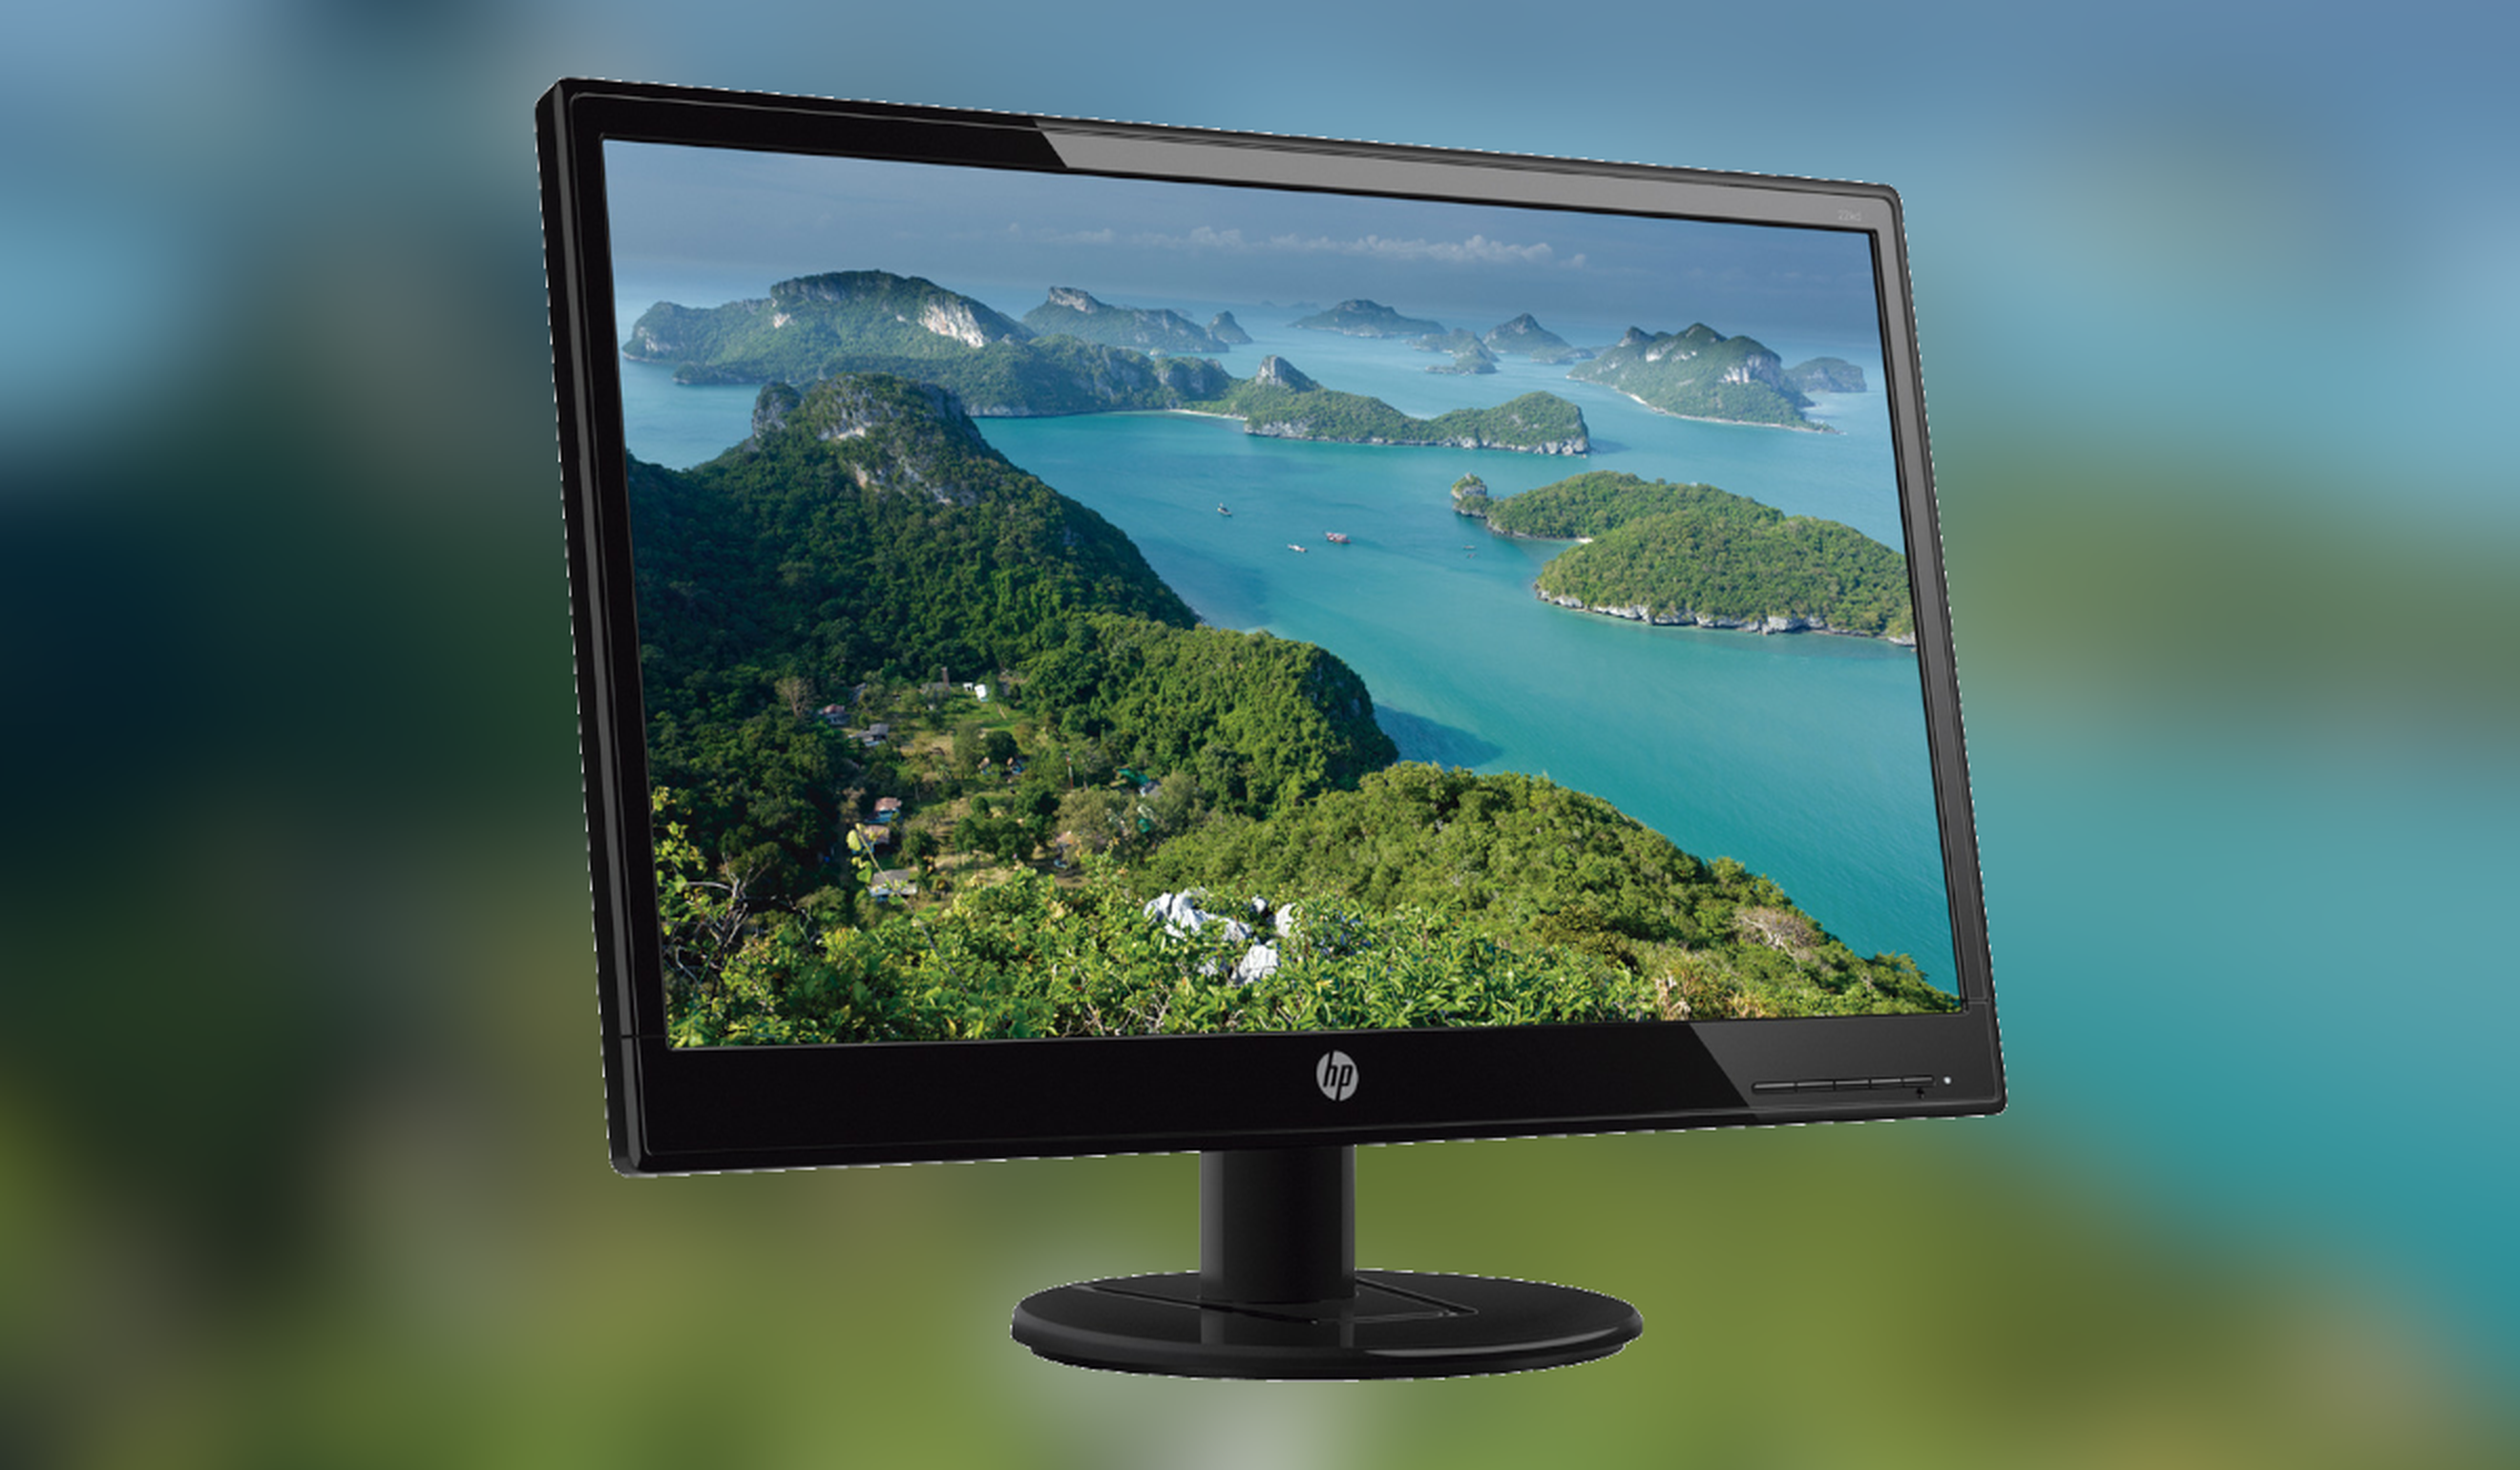 Necesitas un monitor barato? Este HP cuesta sólo 67€ y tiene resolución  Full HD